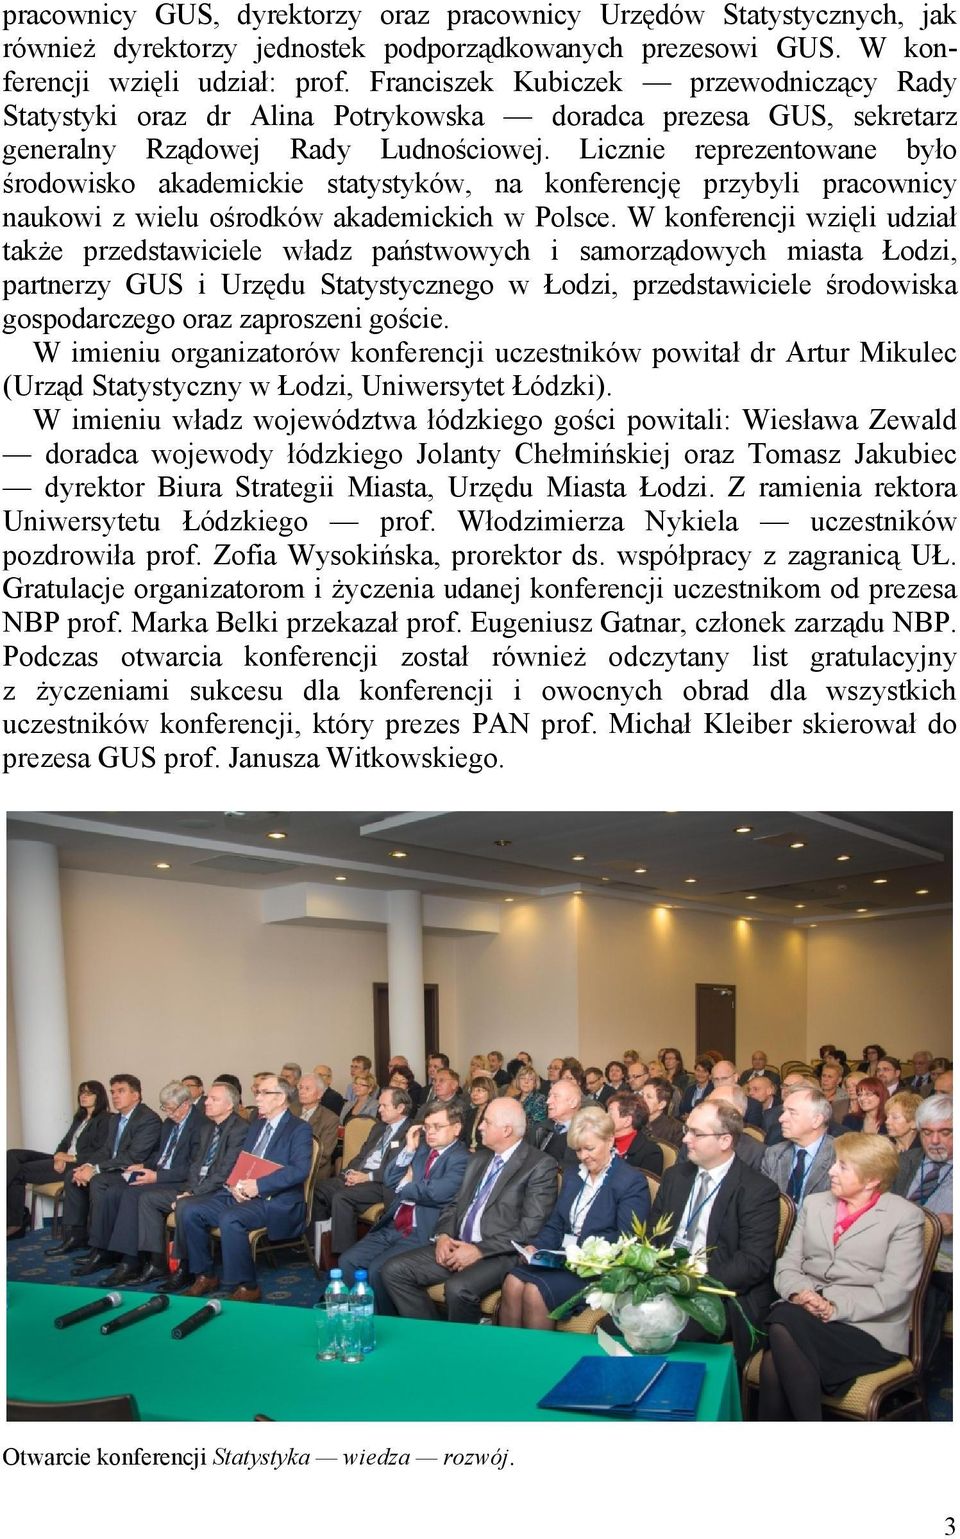 Licznie reprezentowane było środowisko akademickie statystyków, na konferencję przybyli pracownicy naukowi z wielu ośrodków akademickich w Polsce.